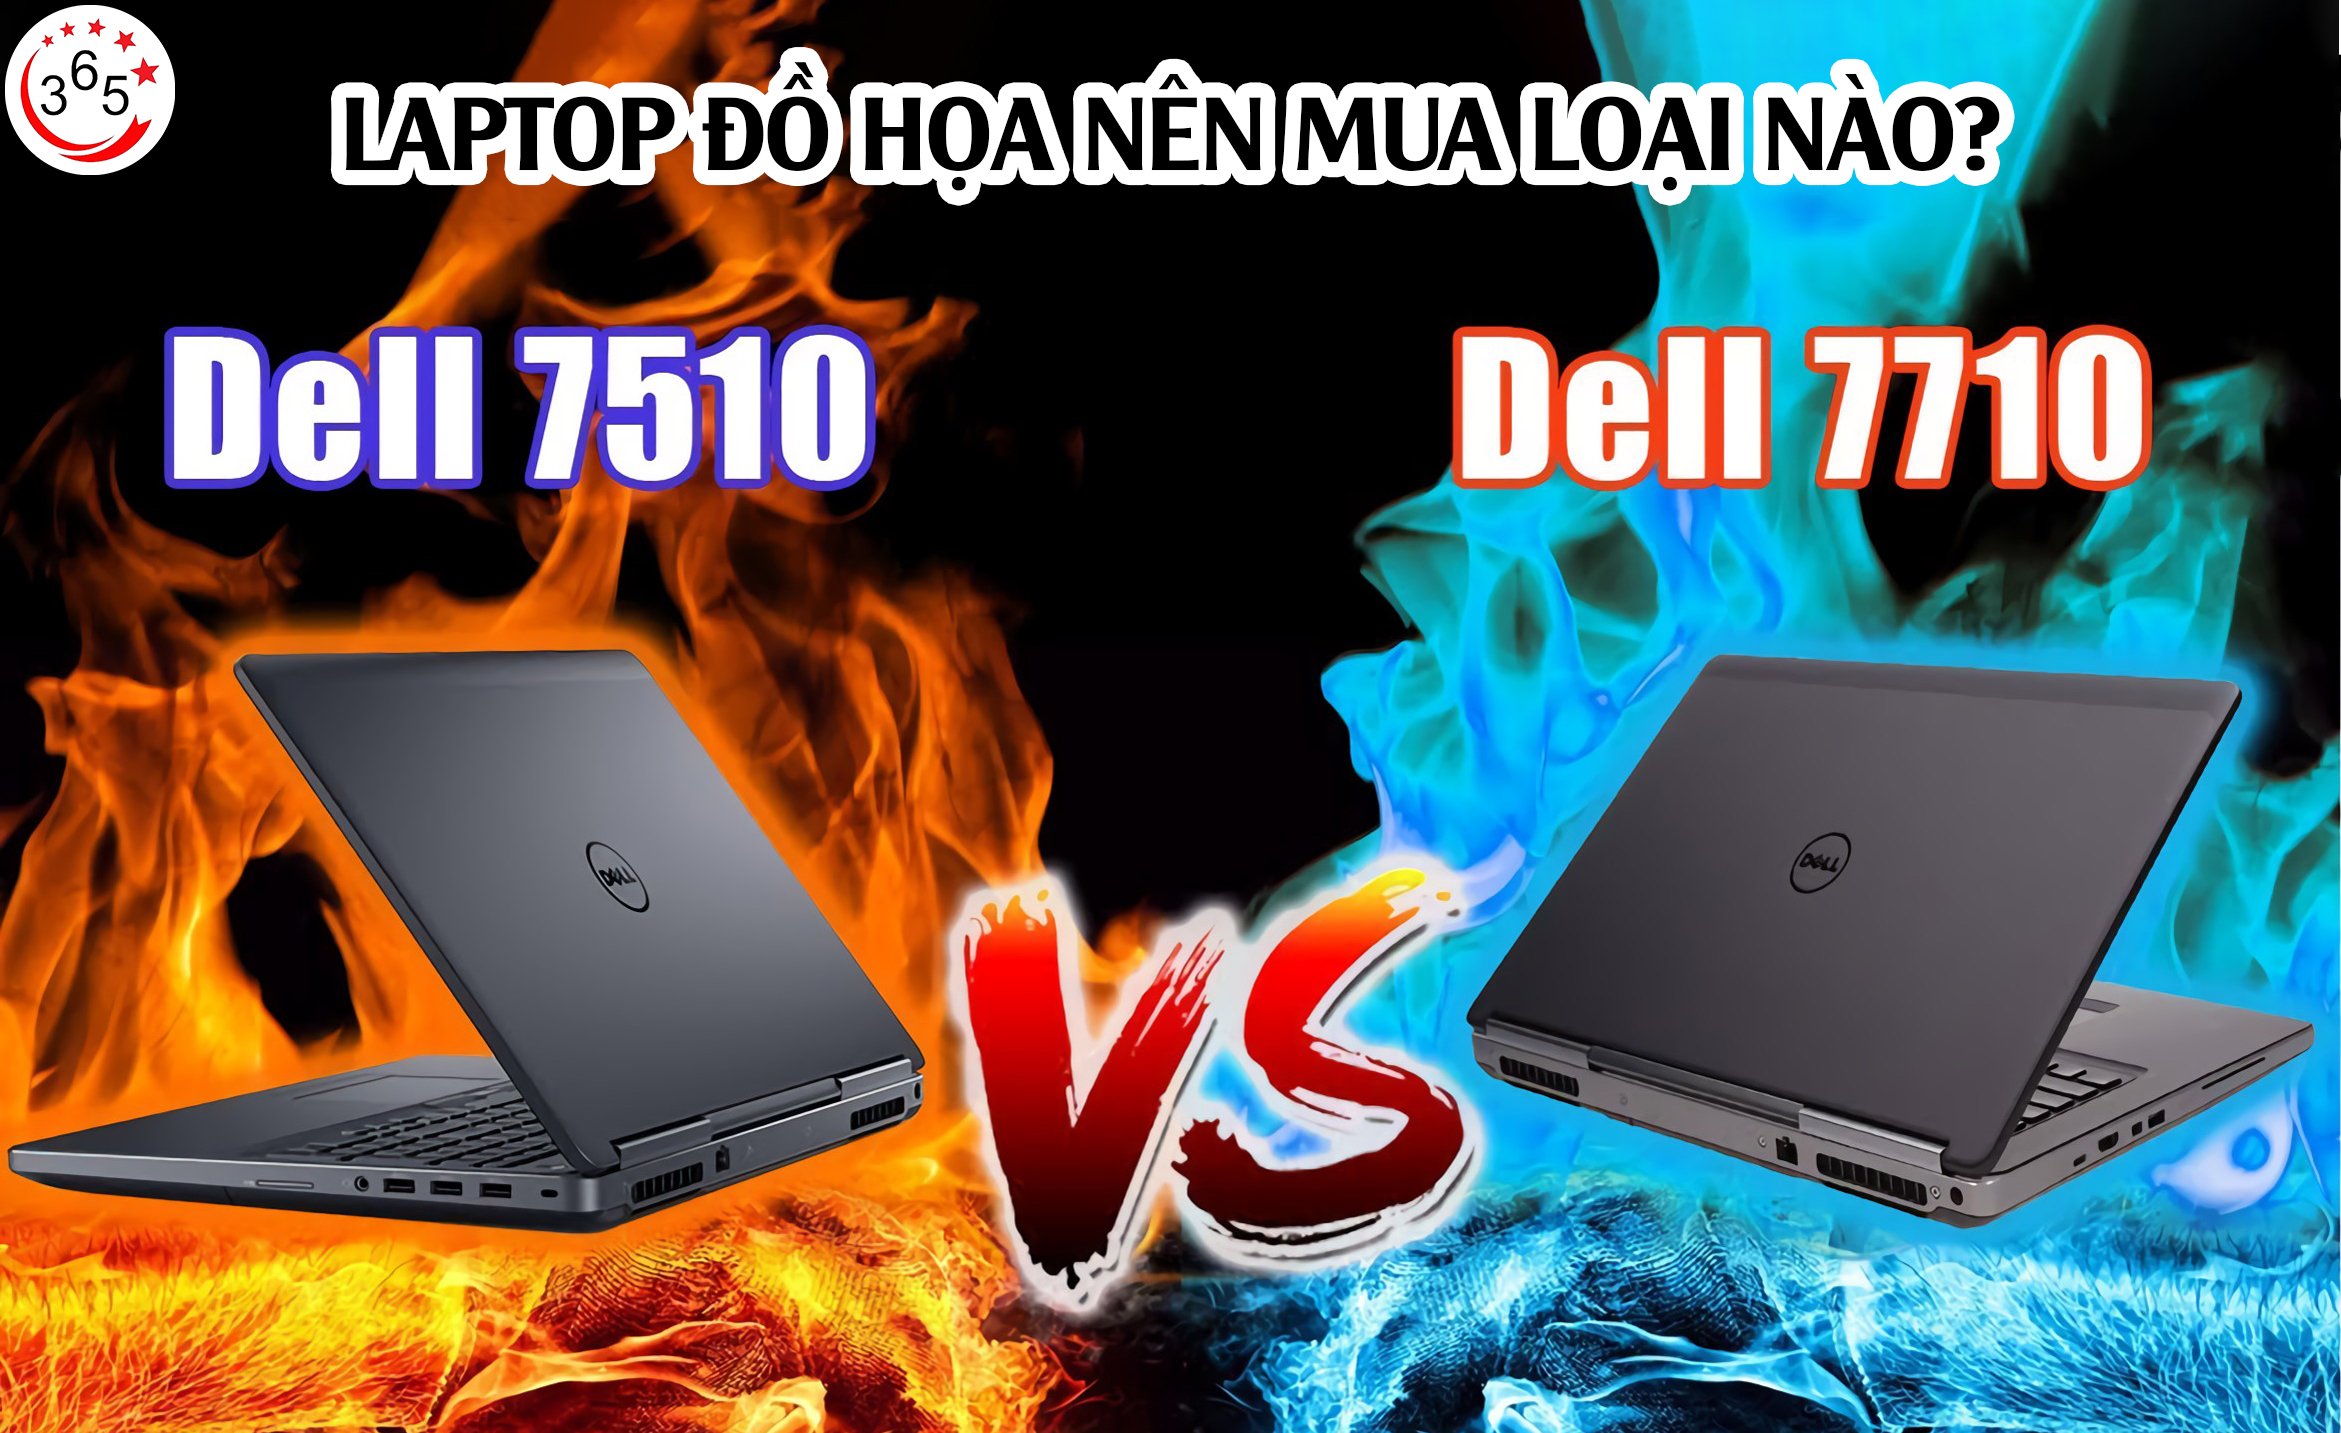 Mã Laptop Đồ Họa Mạnh Mẽ Dell Precision 7510 và Dell Precision 7710.